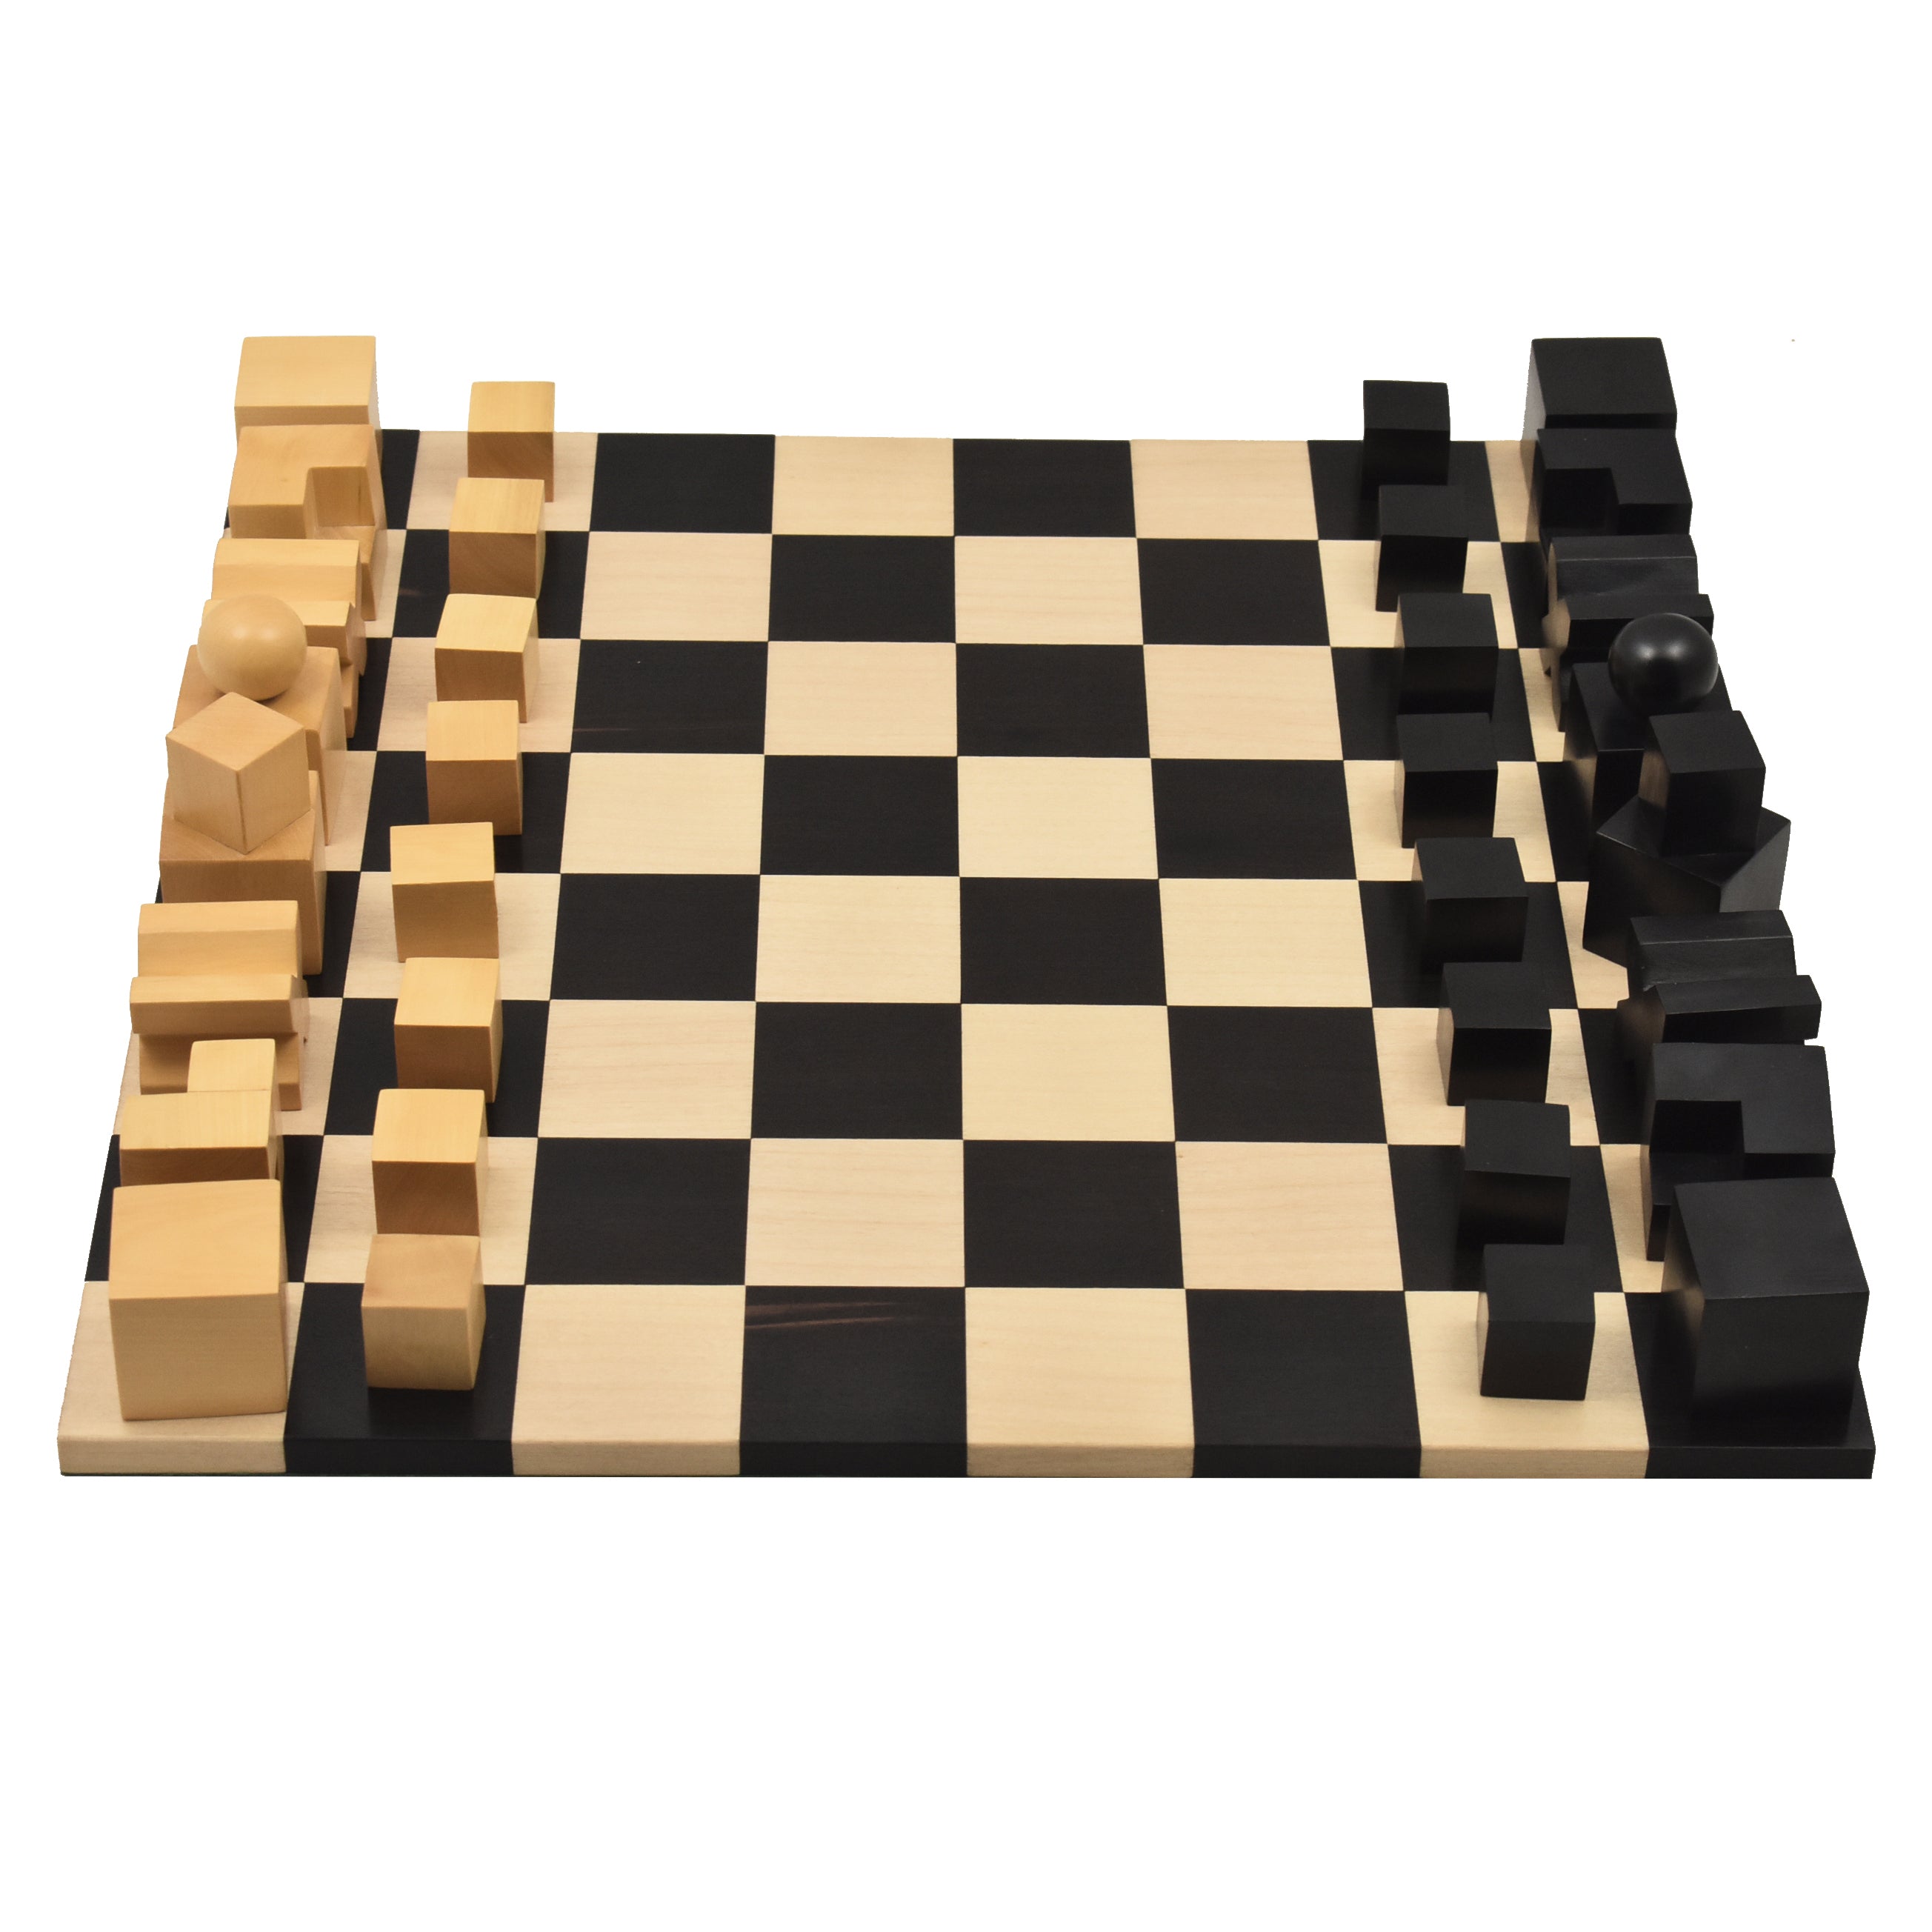 DEAL ITEM: The Bauhaus Chess Board